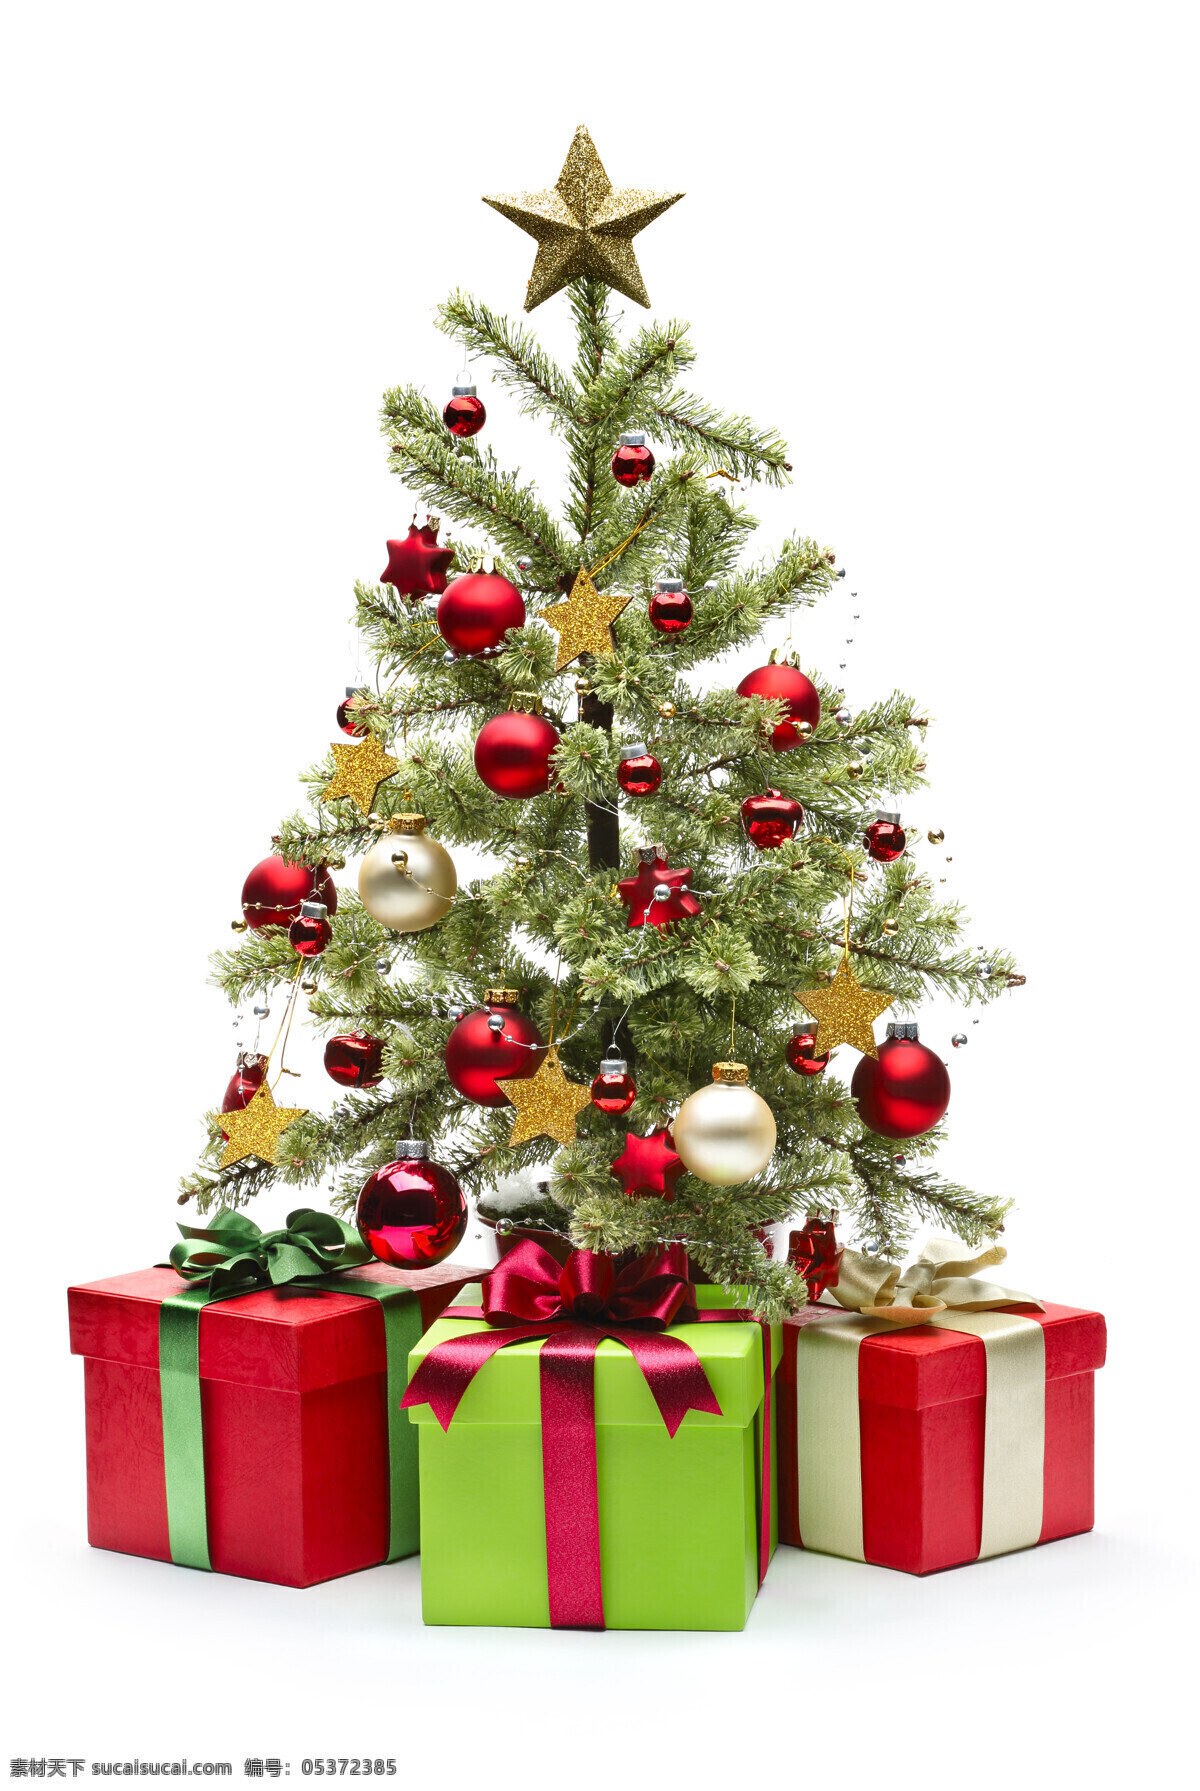 圣诞 树下 礼物 盒 圣诞树 吊饰 圣诞节 节日 礼物盒 蝴蝶结 节日庆典 生活百科